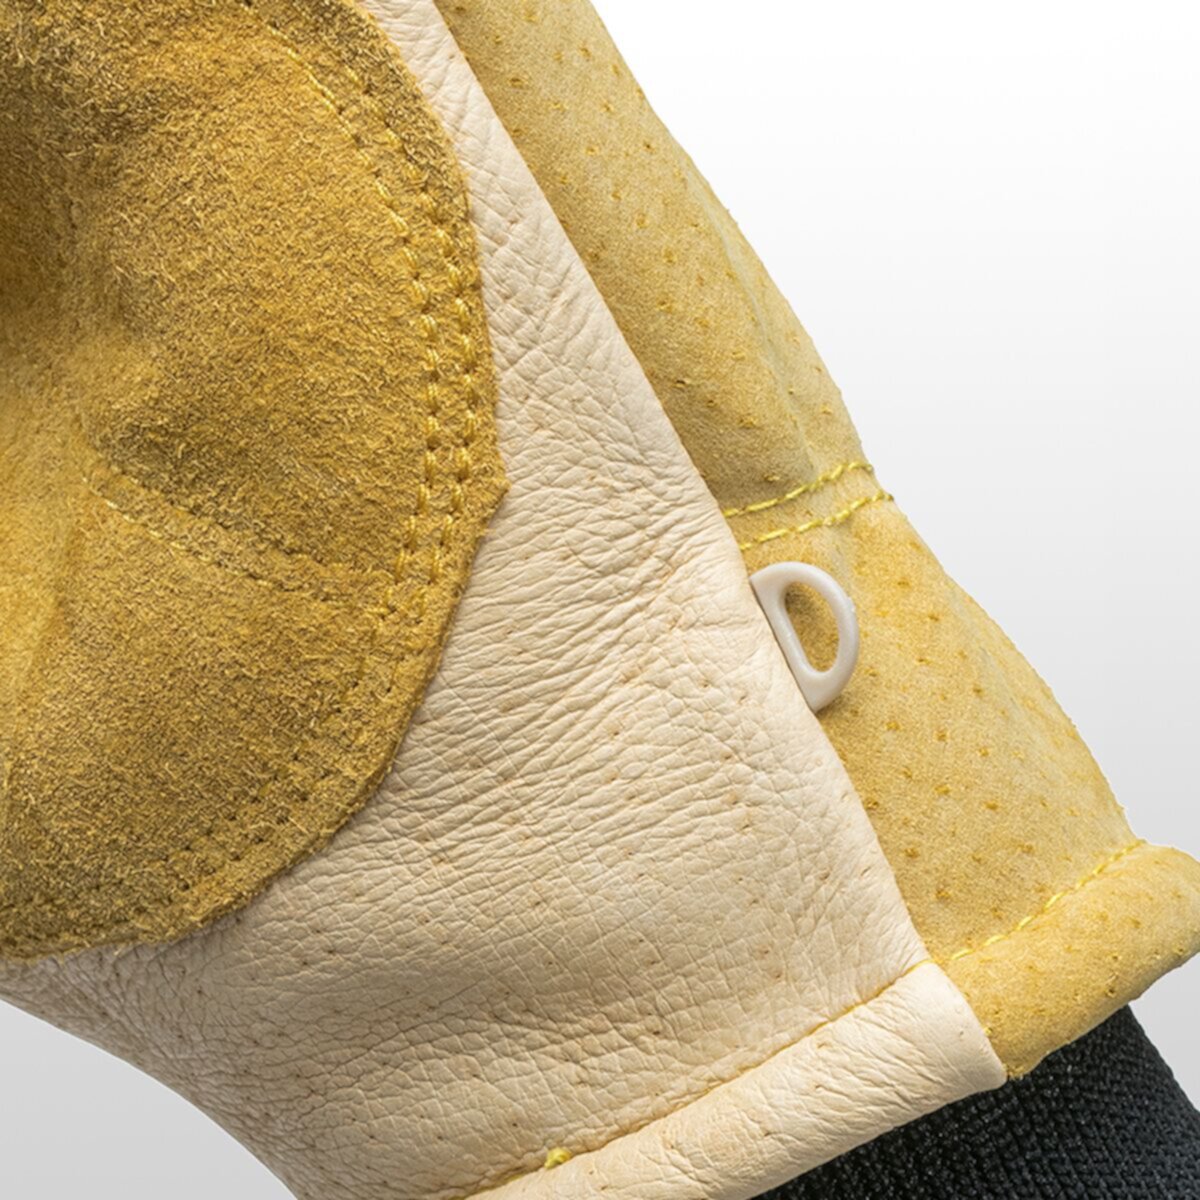 Лыжные перчатки из сверхпрочной ткани PG и замши из свиной кожи на подкладке + манжеты Omni-Cuff Kinco